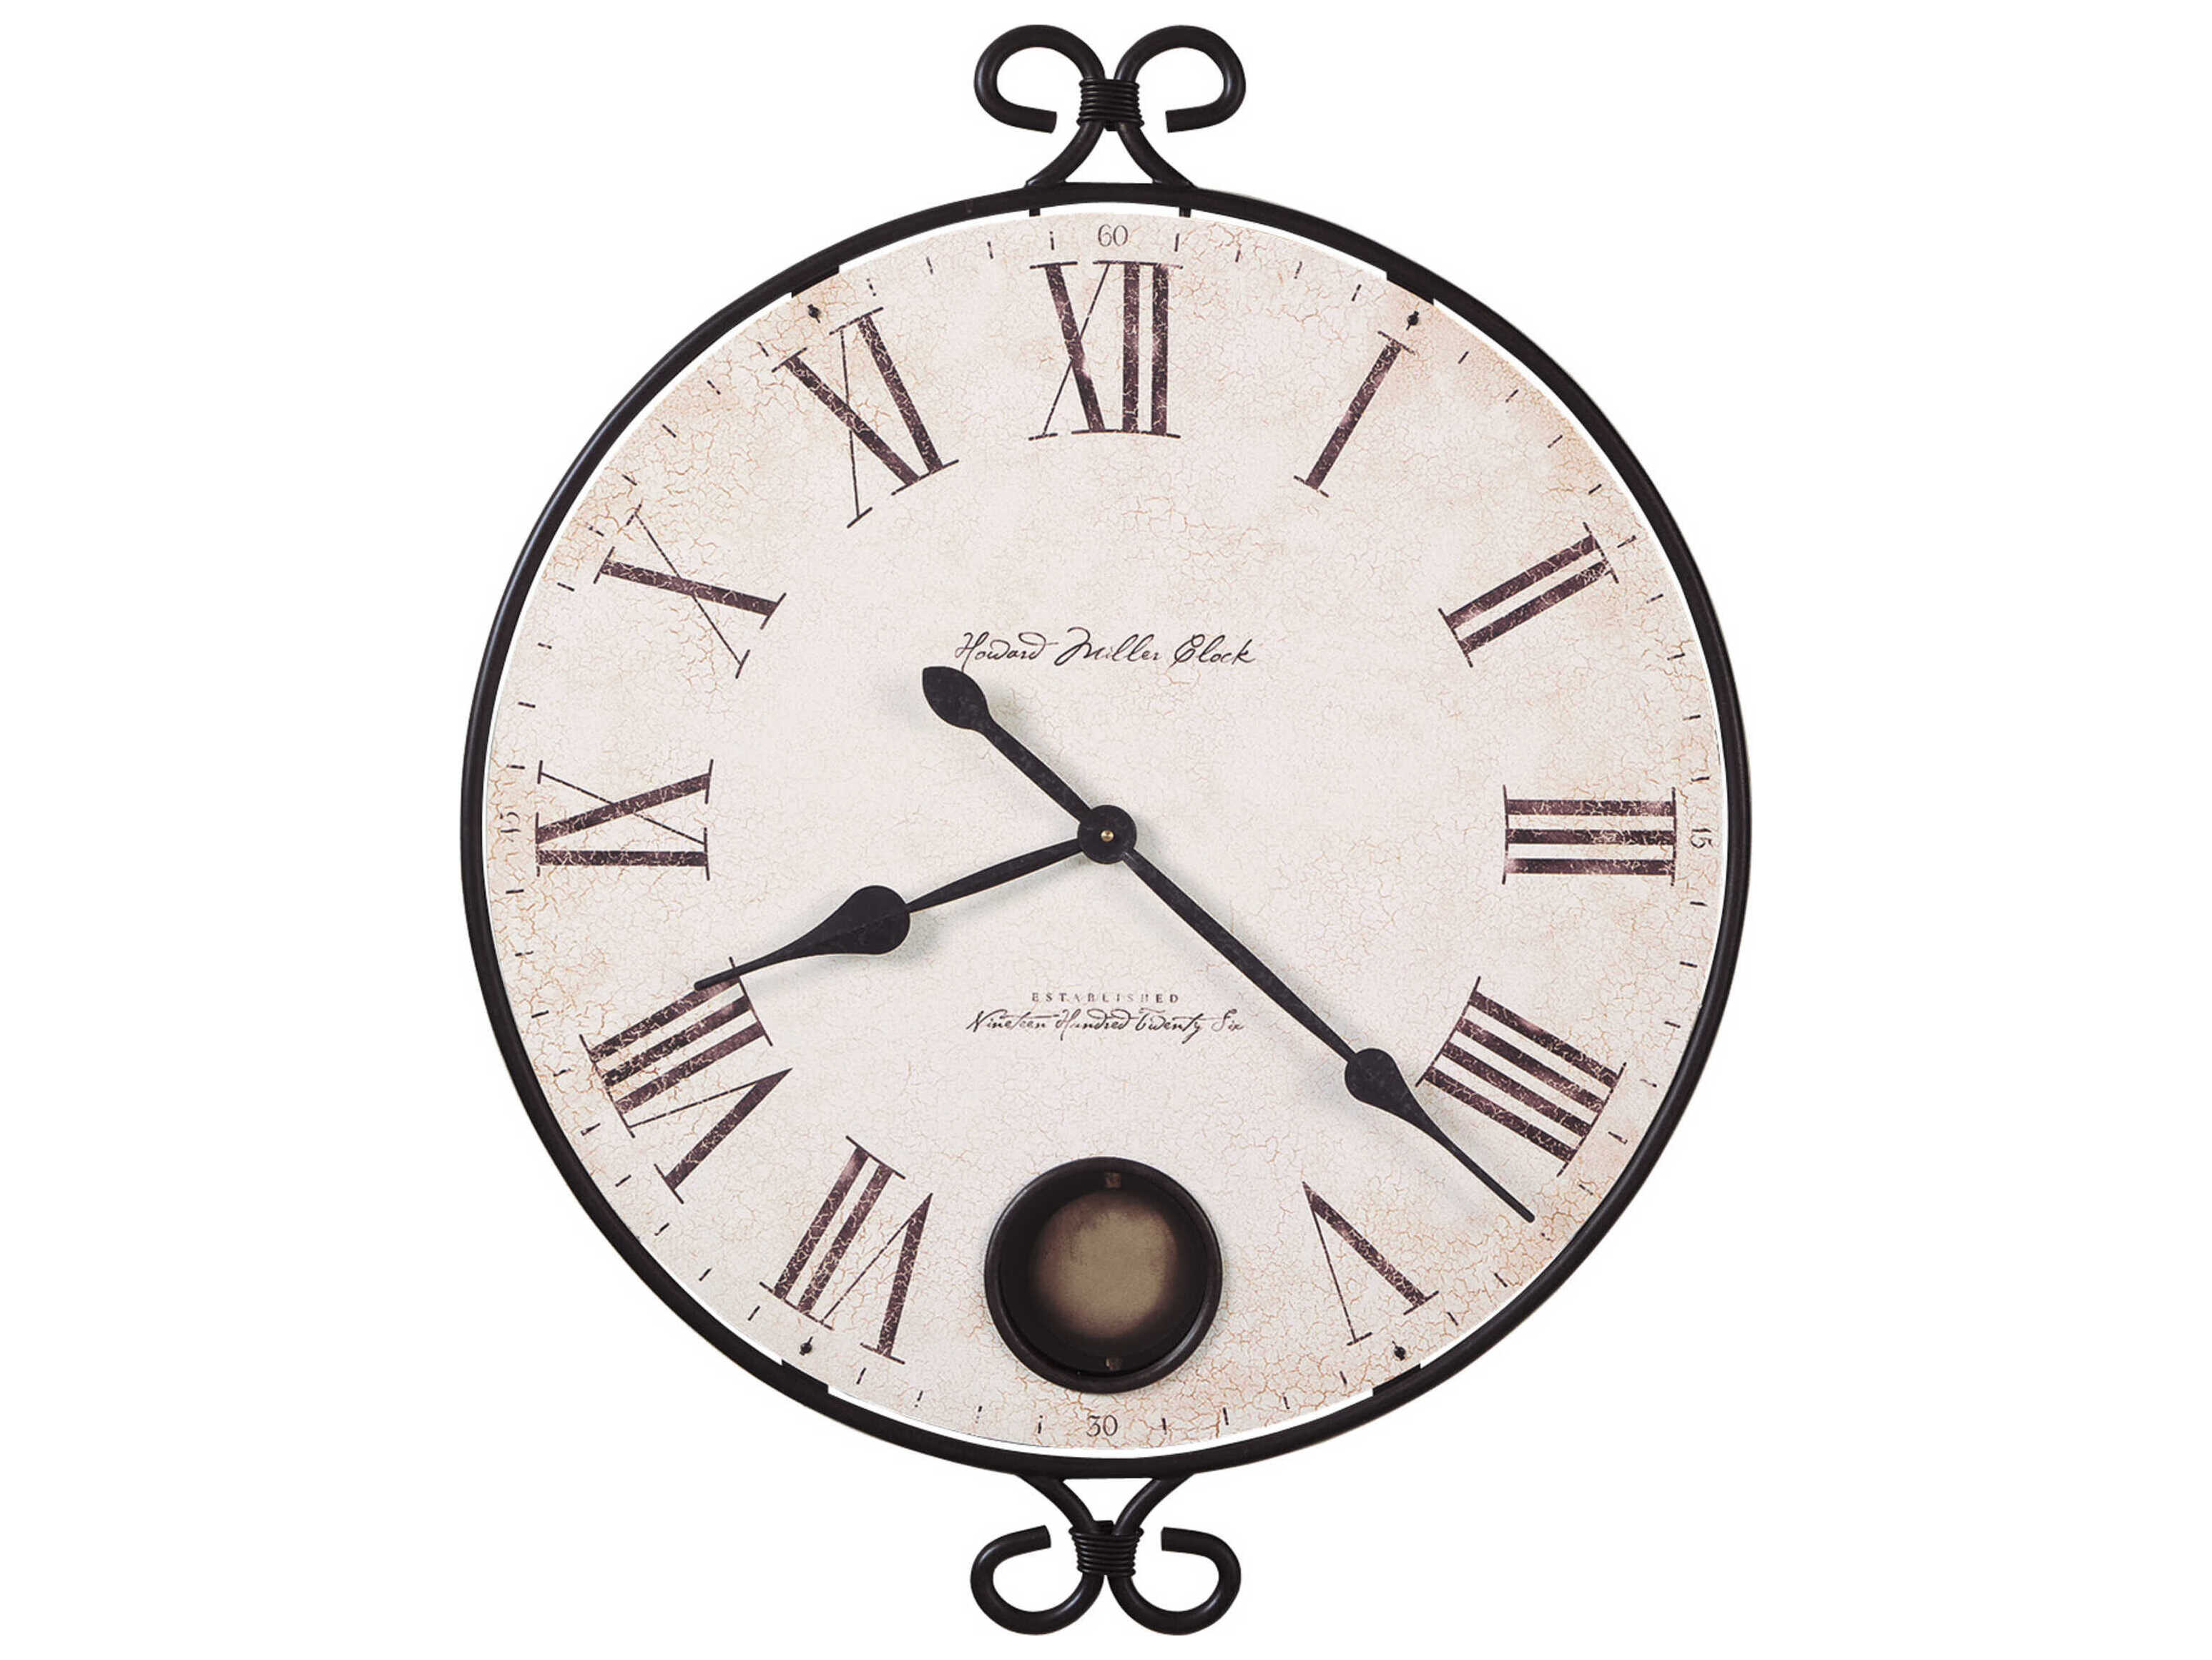 Часы 36 см. Howard Miller часы железные. Howard Miller часы настенные стекло. Французские настенные часы. Циферблат уличных часов.